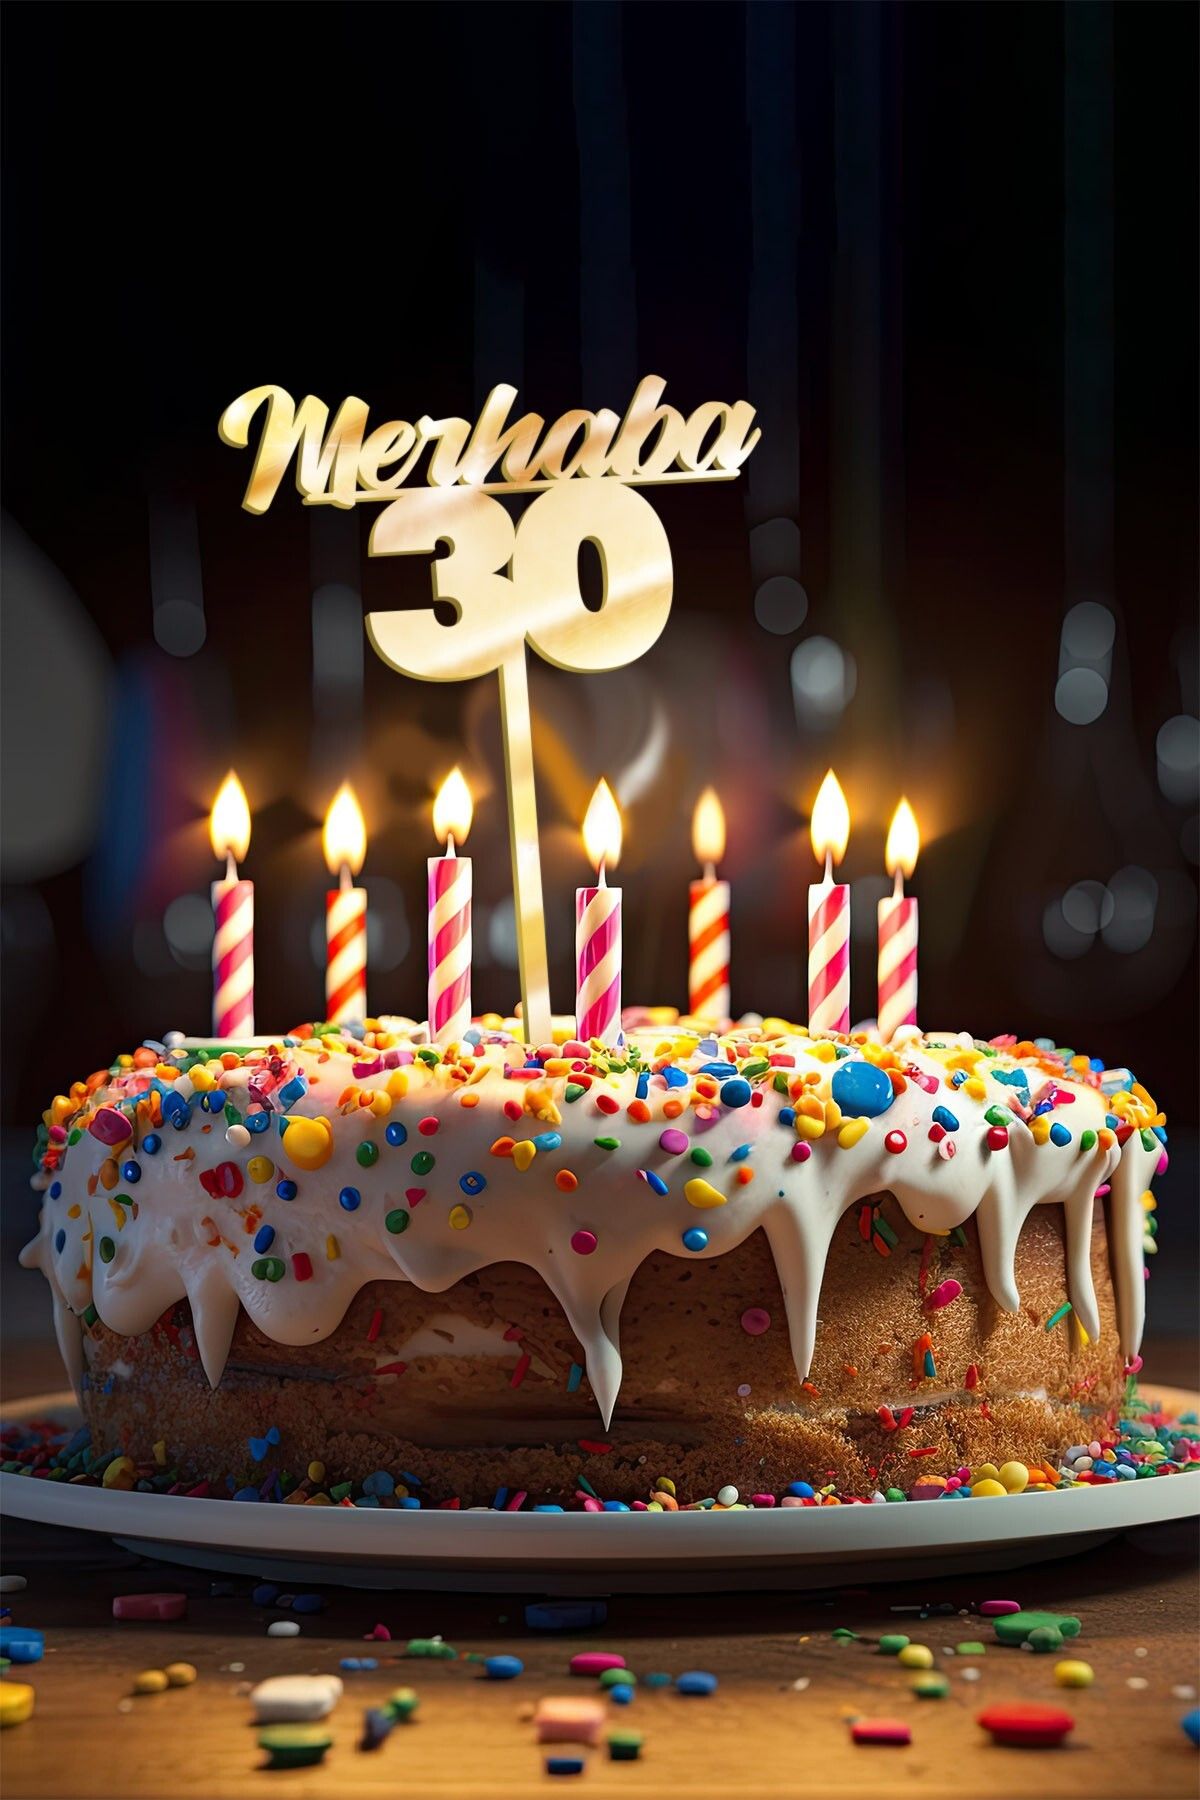 Artikel Gold Merhaba 30 Yaş Yazılı Ayna Pleksi Pasta Üstü & Doğum Günü Partisi & Pleksi Pasta Süsü